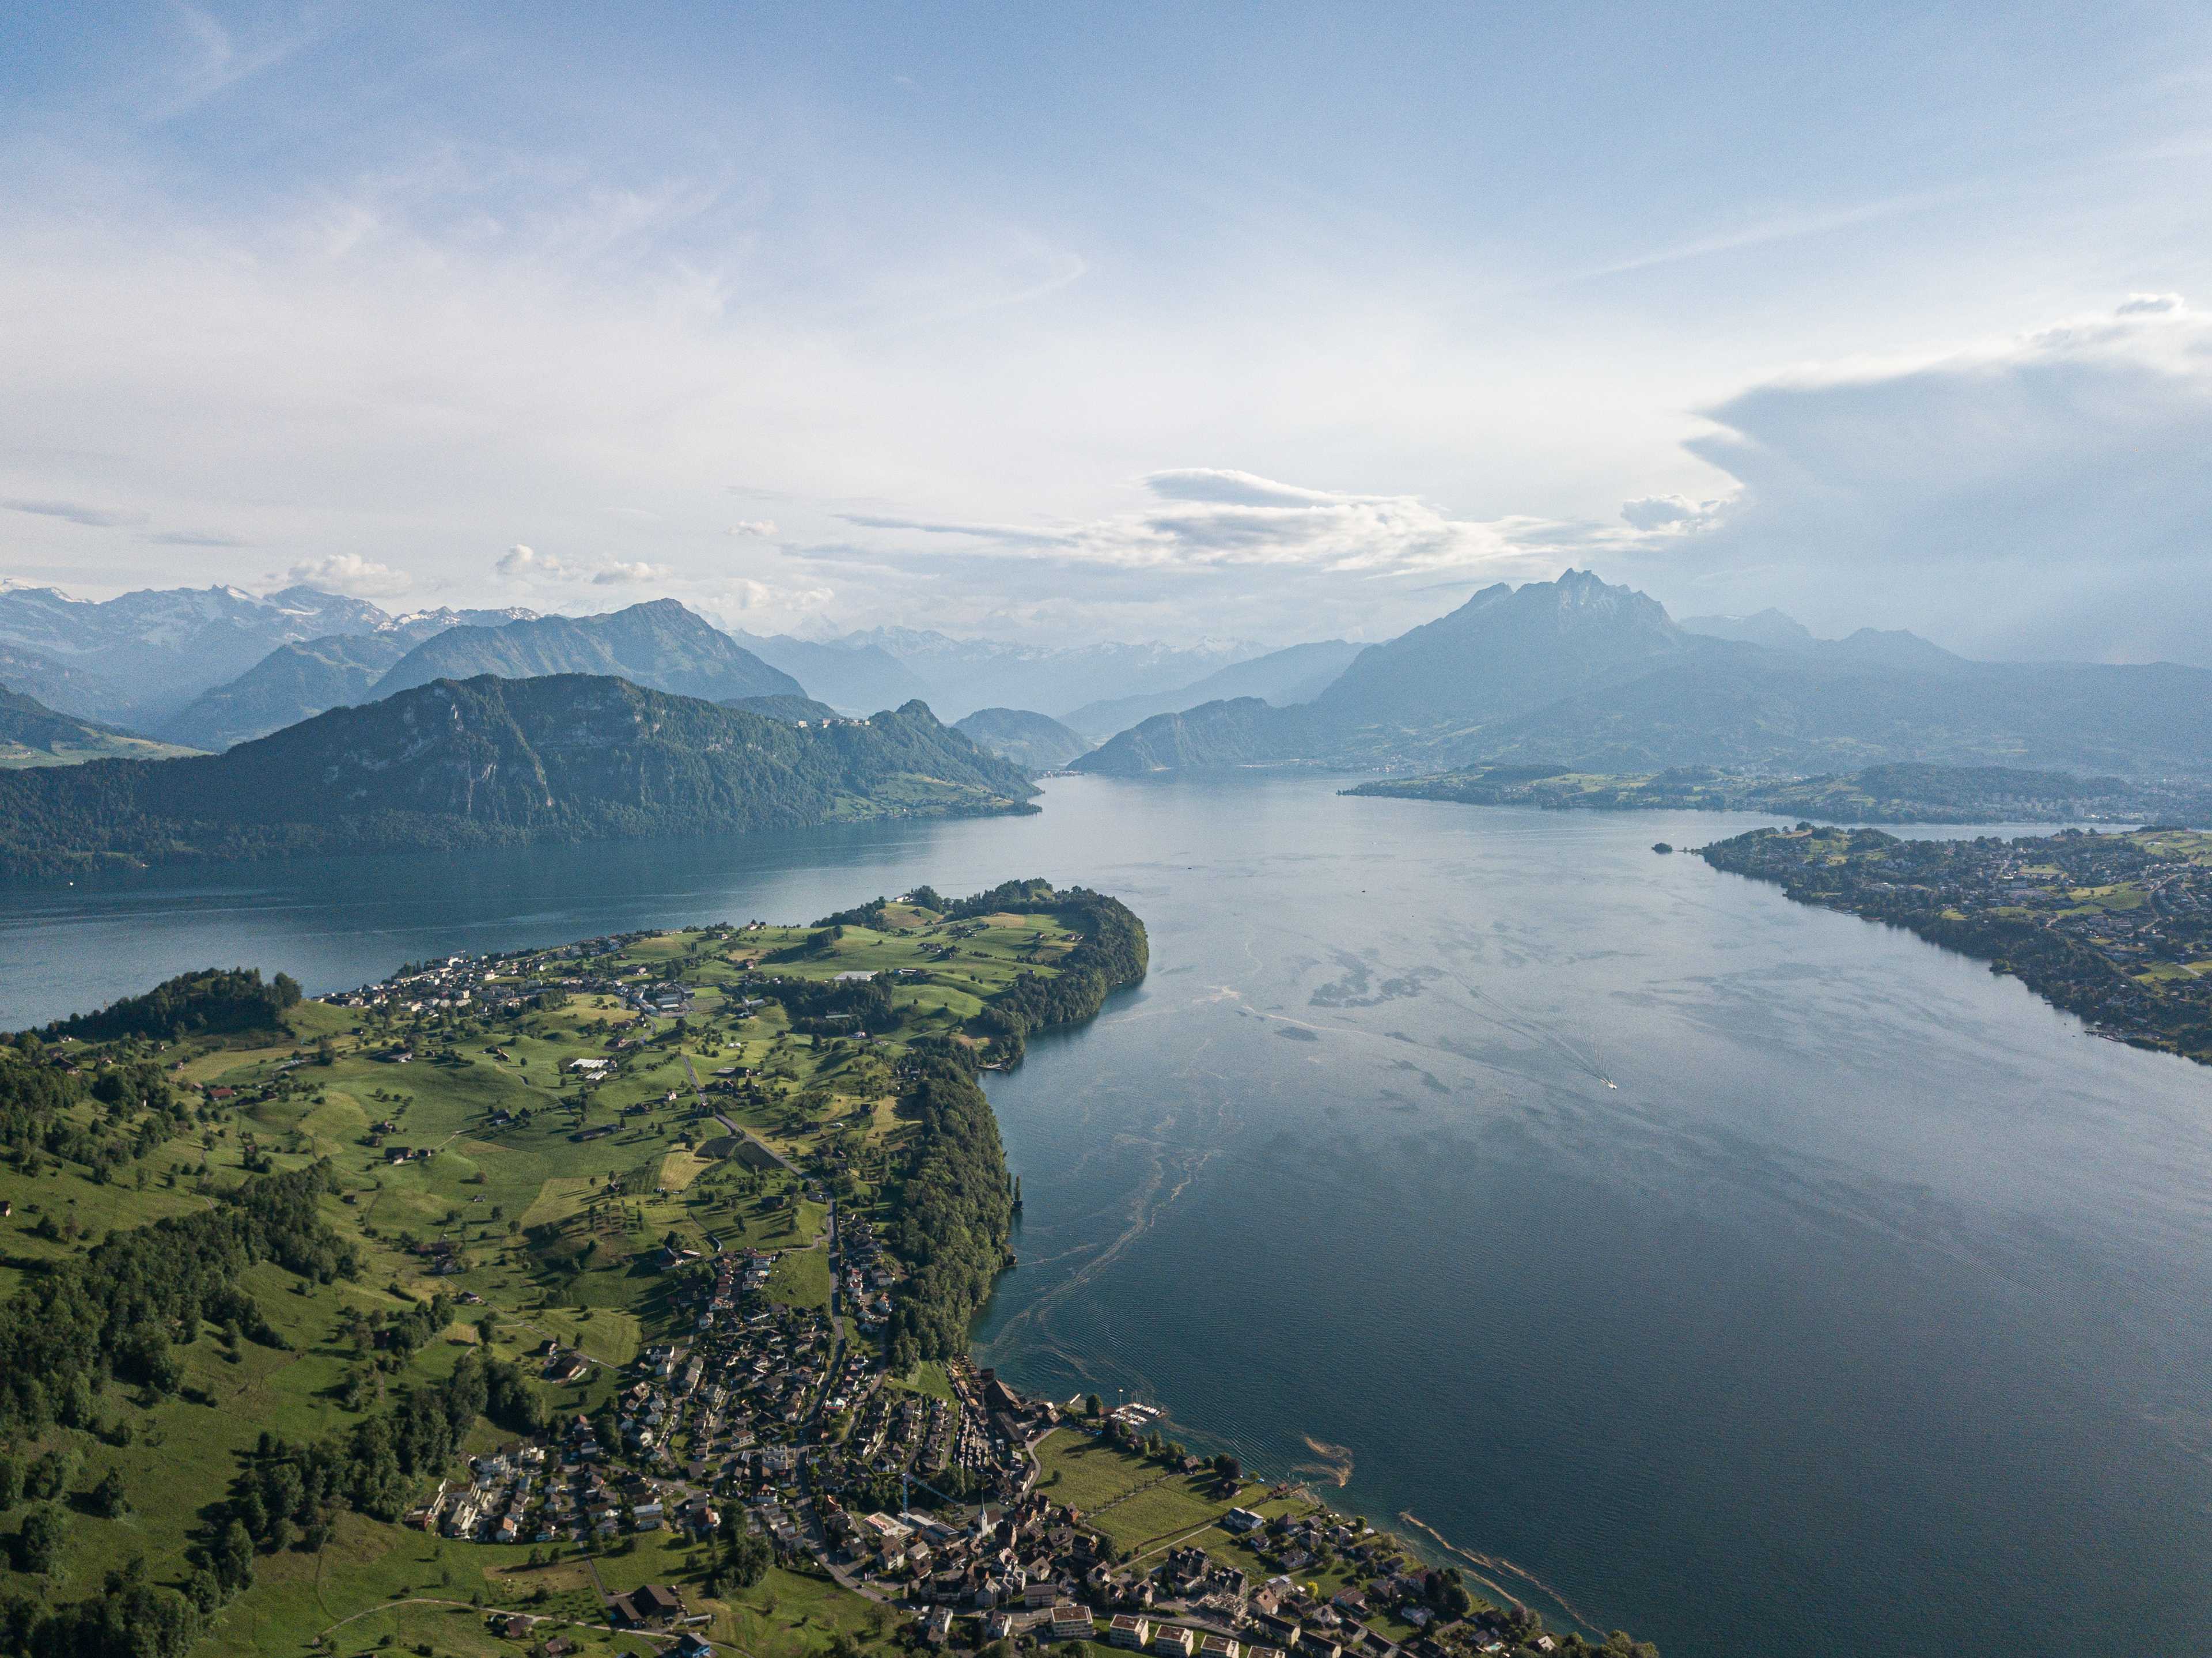 Lake Lucerne (Vierwaldstättersee), Switzerland